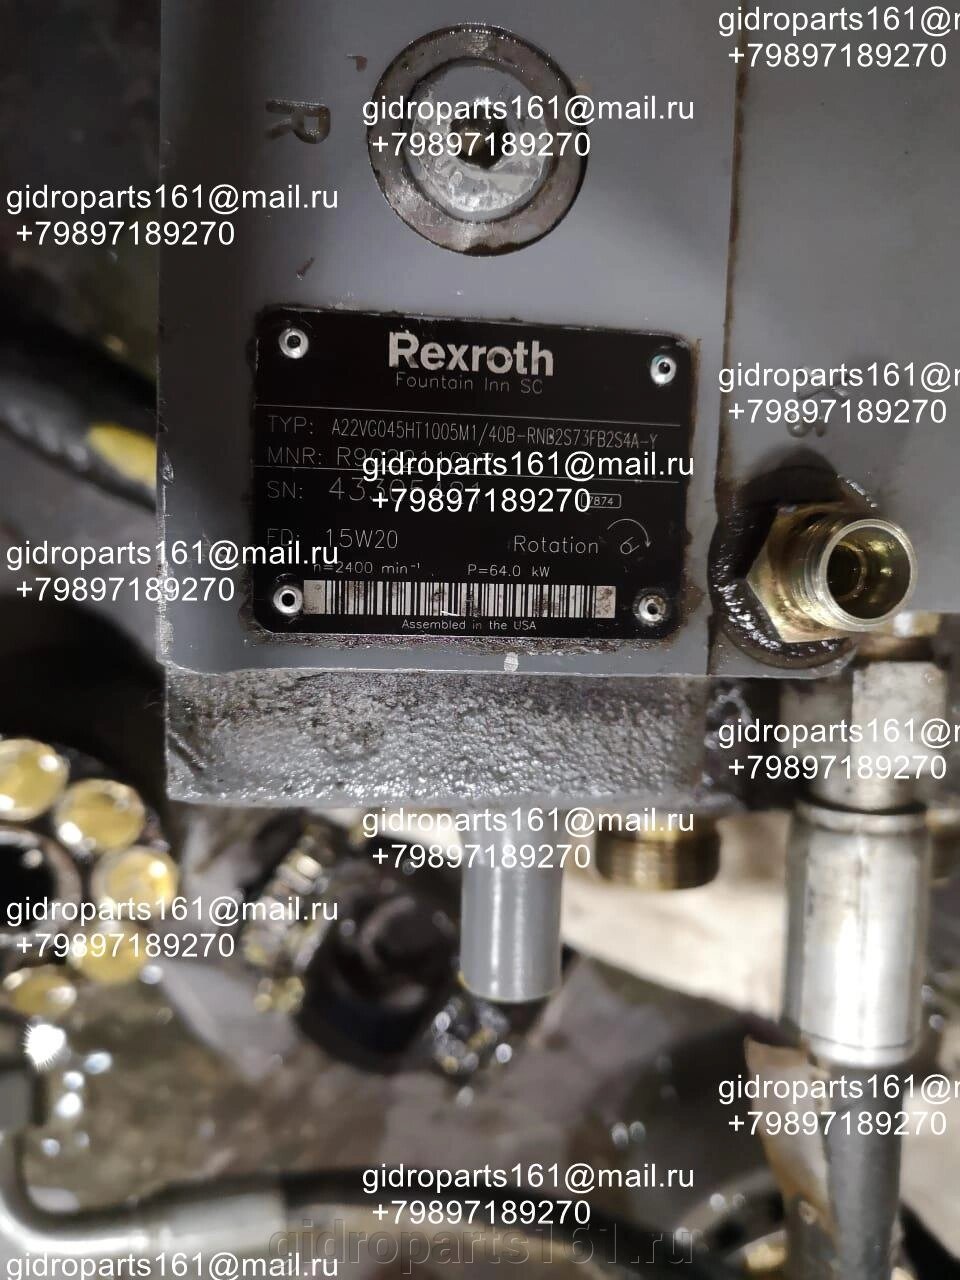 Гидравлический насос Rexroth A22VG045HT1005M1/40B-RNB2S73FB2S4A-Y от компании Гидравлические запчасти 161 - фото 1